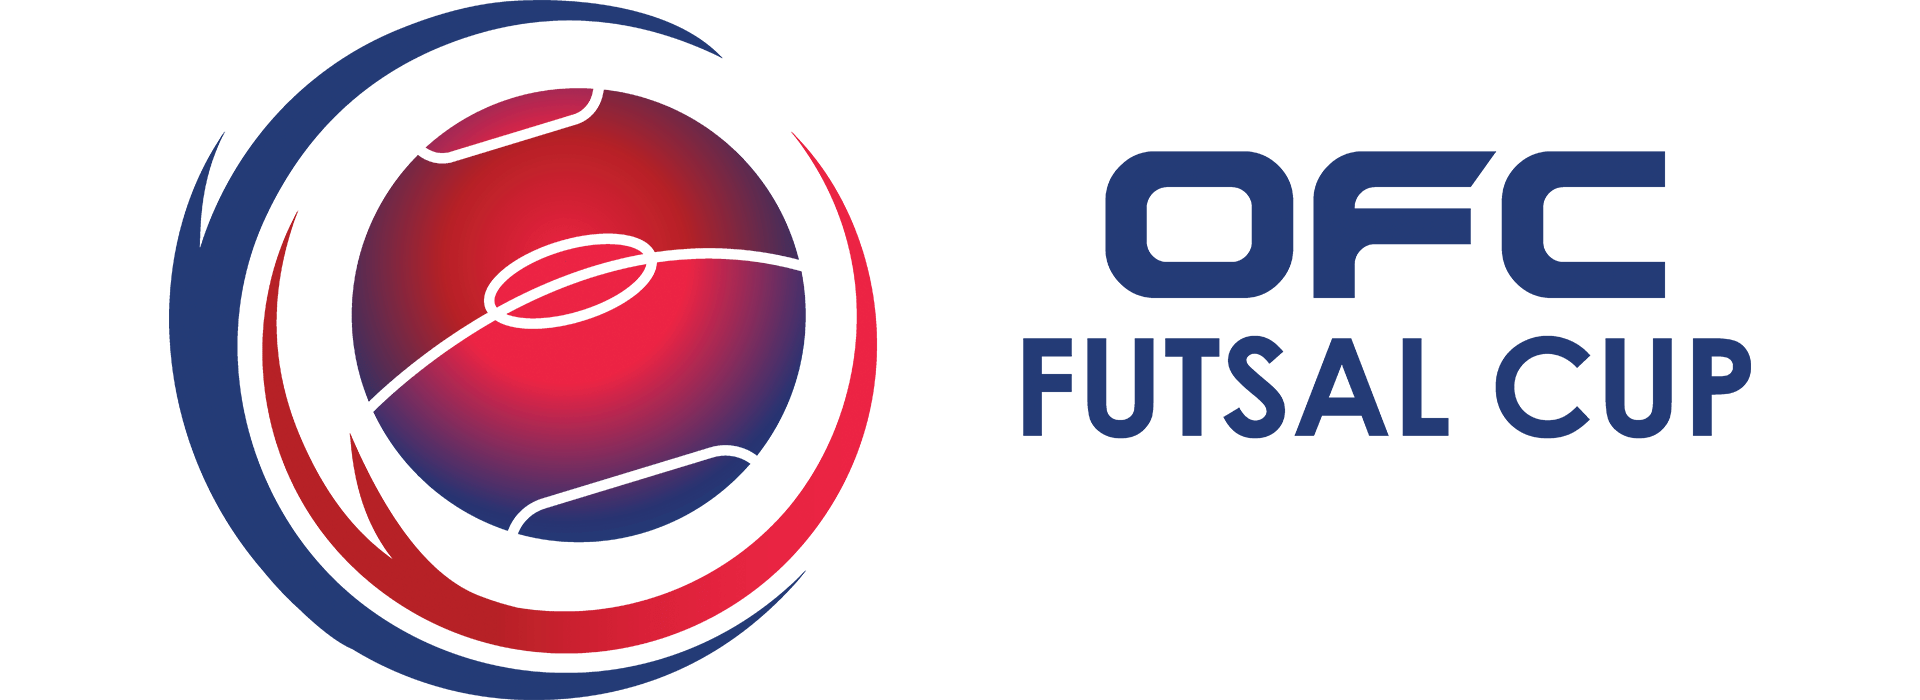 Giải vô địch futsal châu Đại dương – OFC Futsal Championship